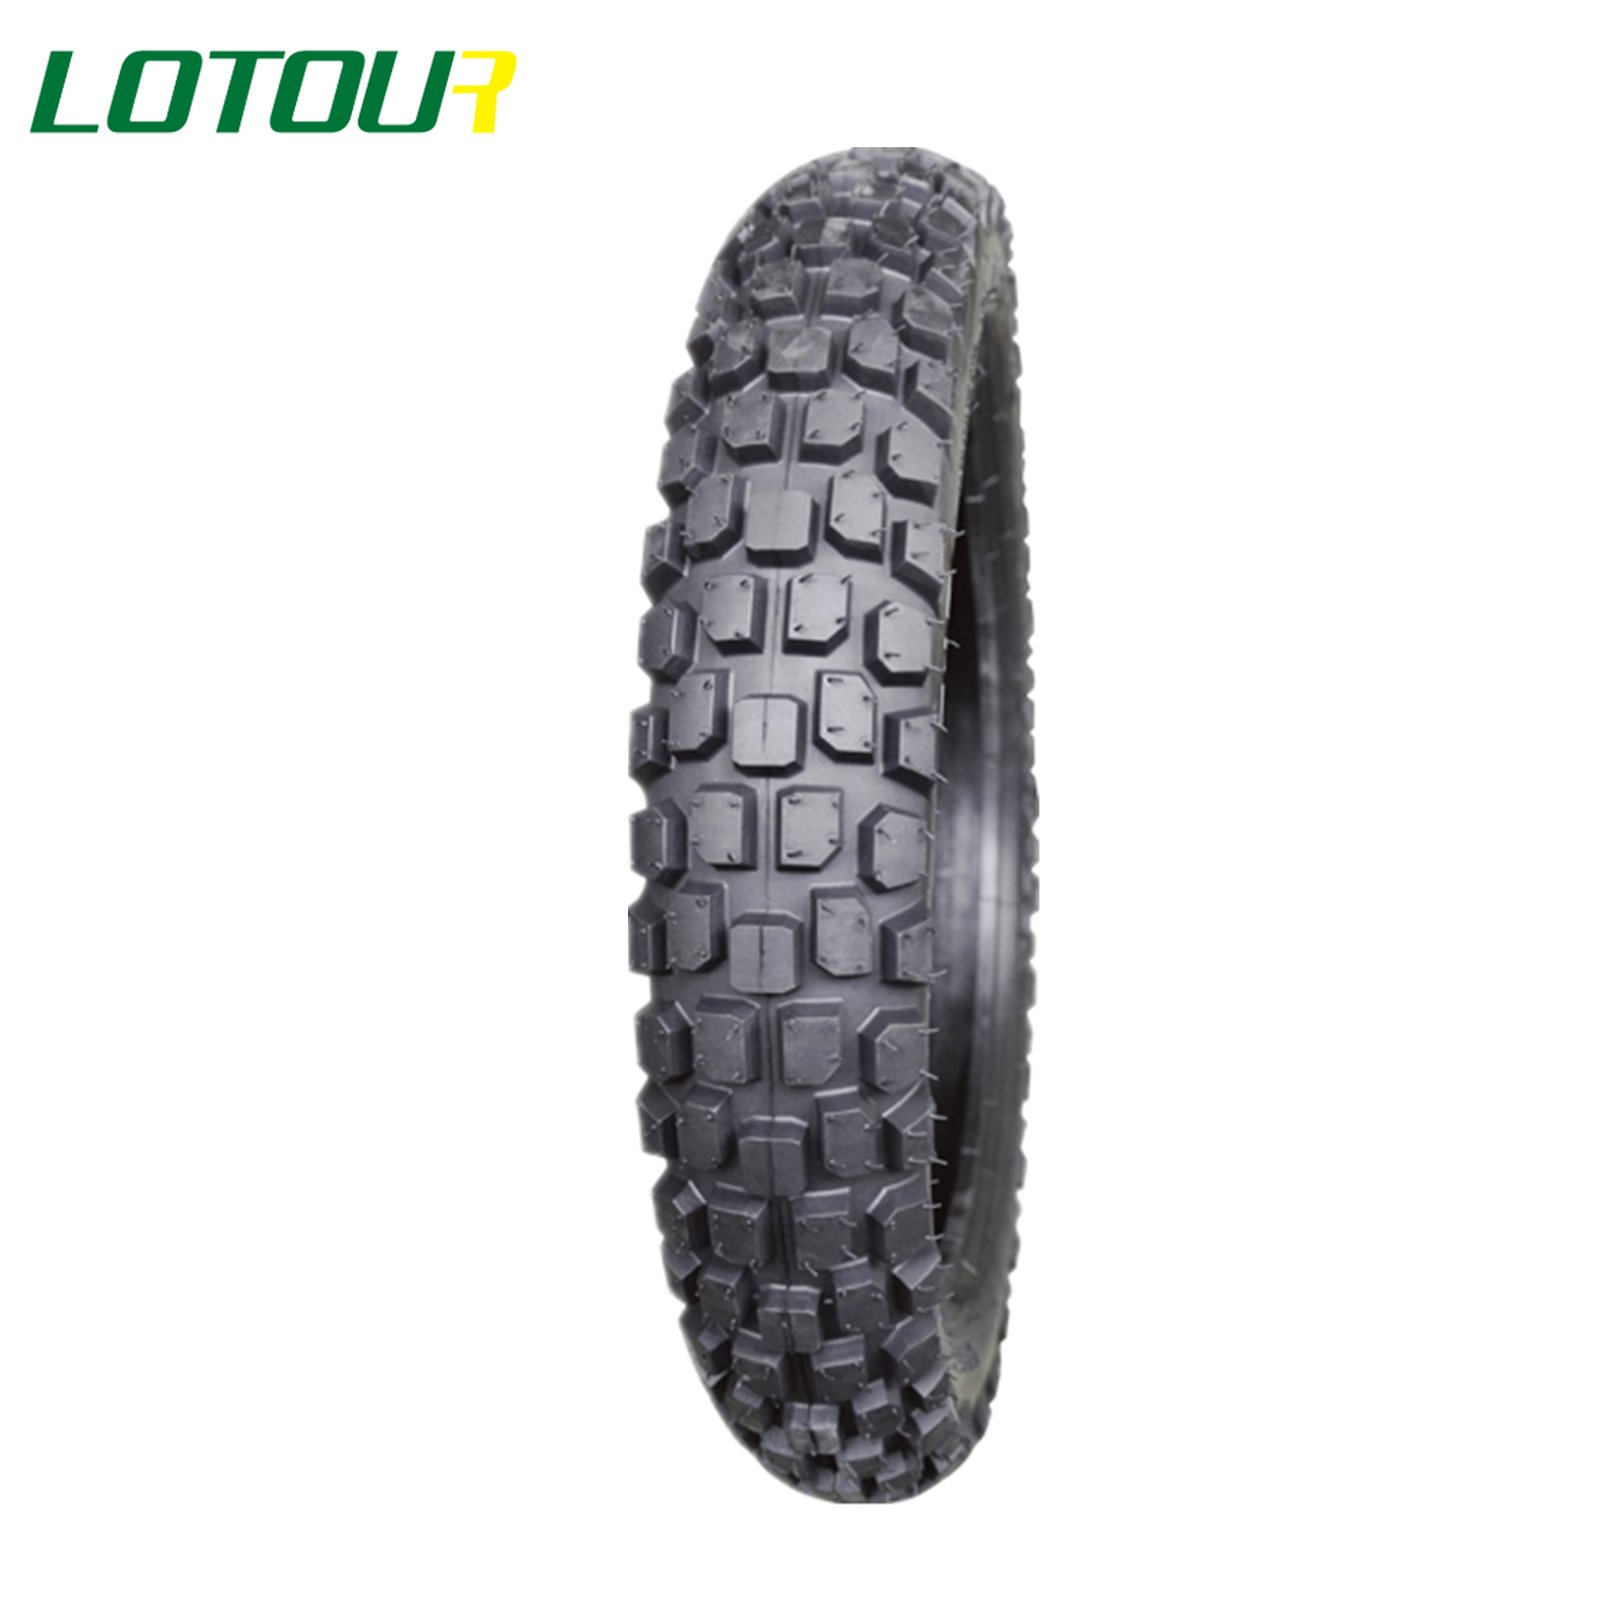 Lotour Tire M3035